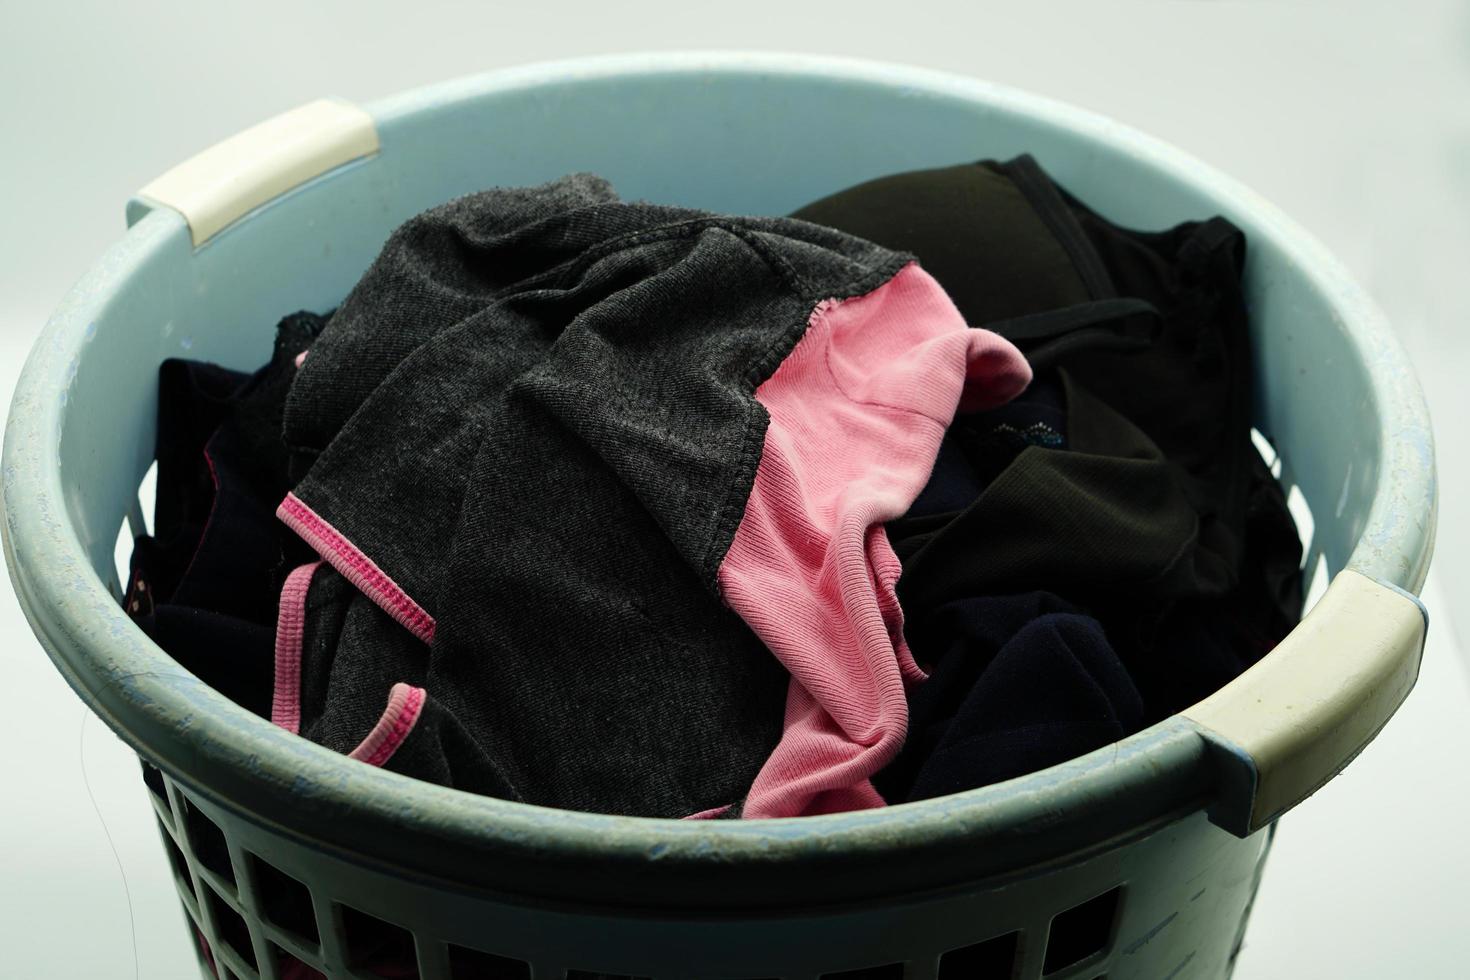 des vêtements qui ont déjà été mis dans le panier, attendant d'être lavés. photo